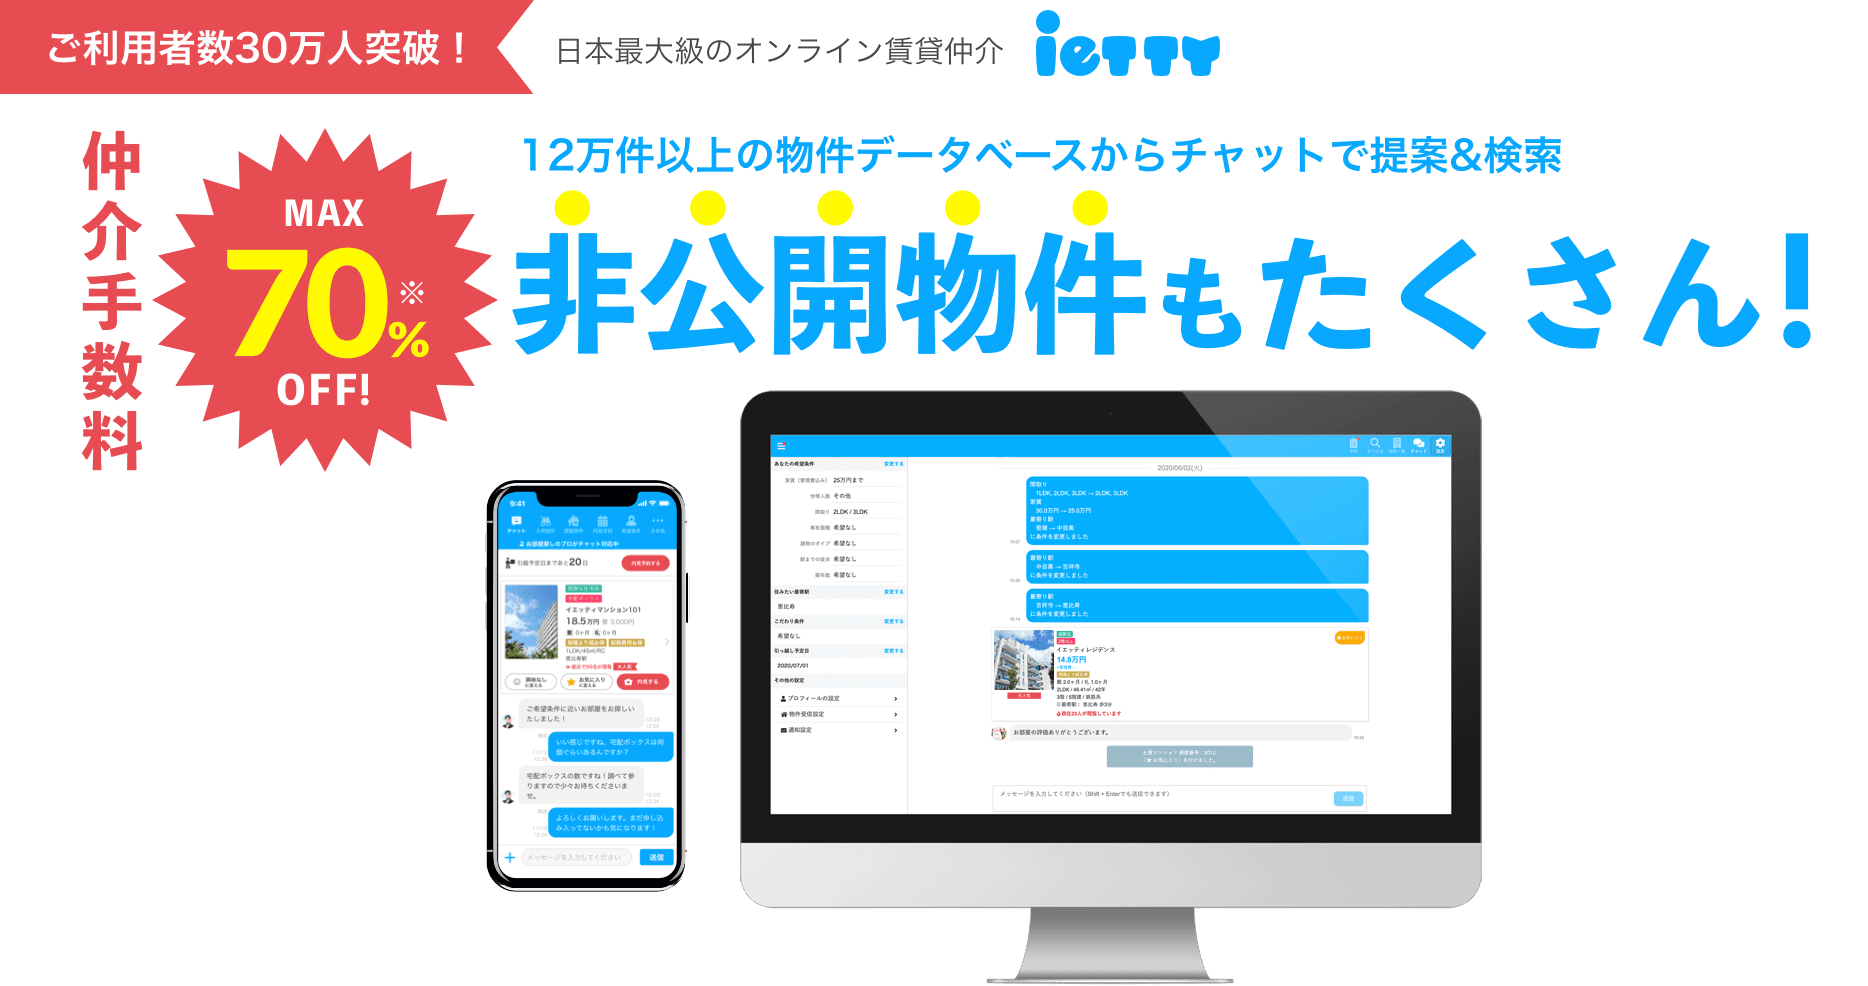 日本最大級のオンライン賃貸仲介ietty 12万件以上の物件データベースからチャットで提案＆検索 仲介手数料MAX70%OFF! 非公開物件もたくさん！